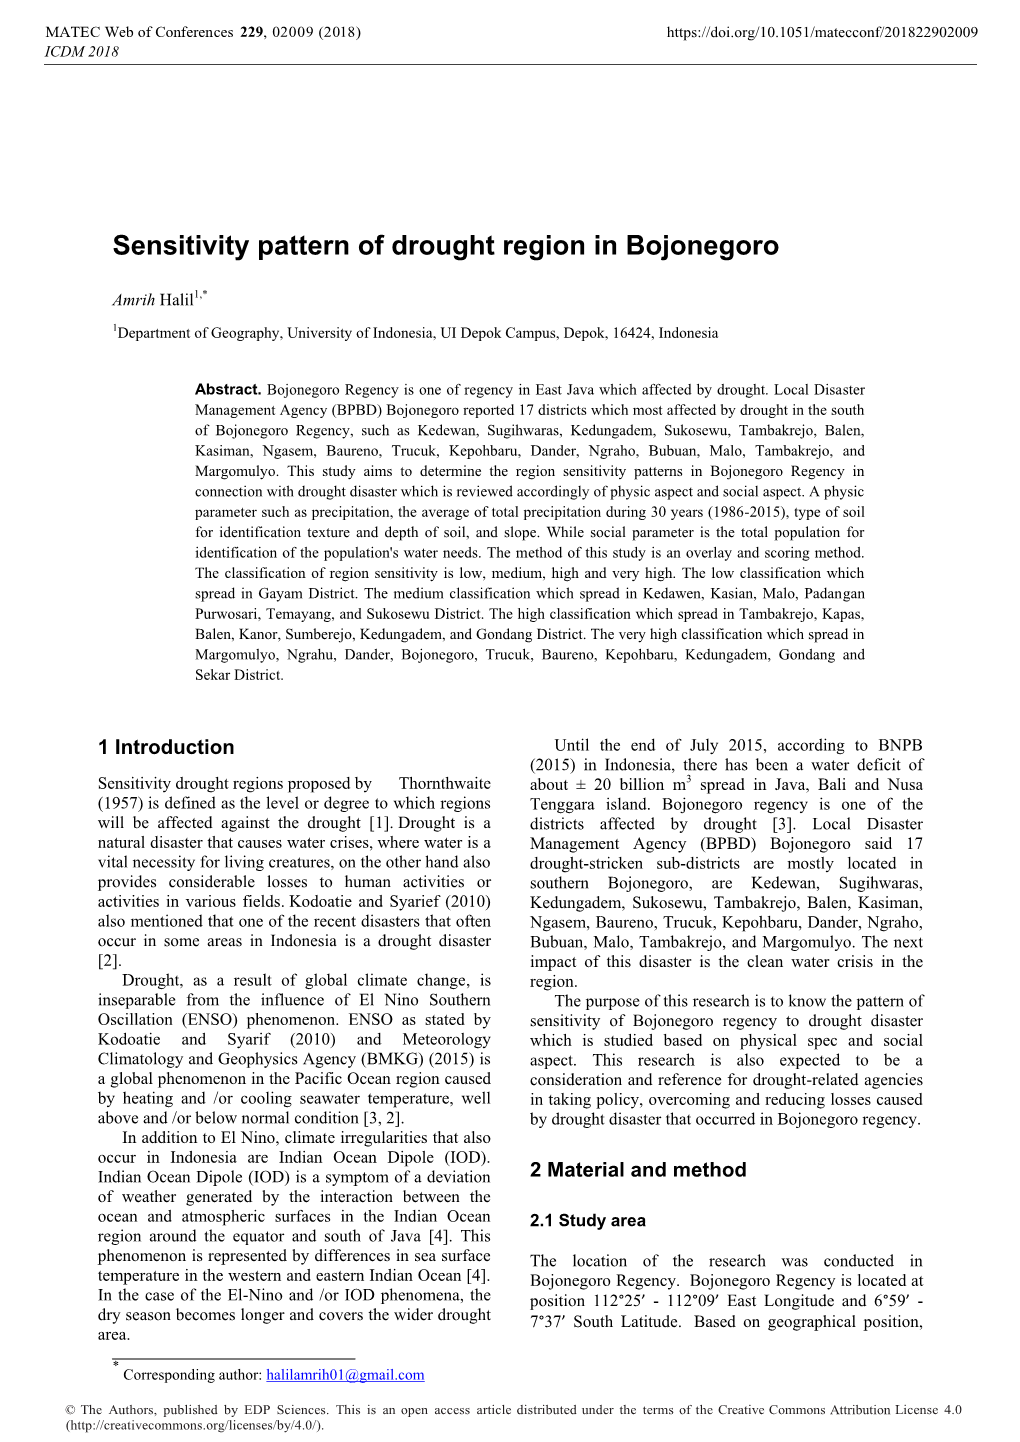 Sensitivity Pattern of Drought Region in Bojonegoro